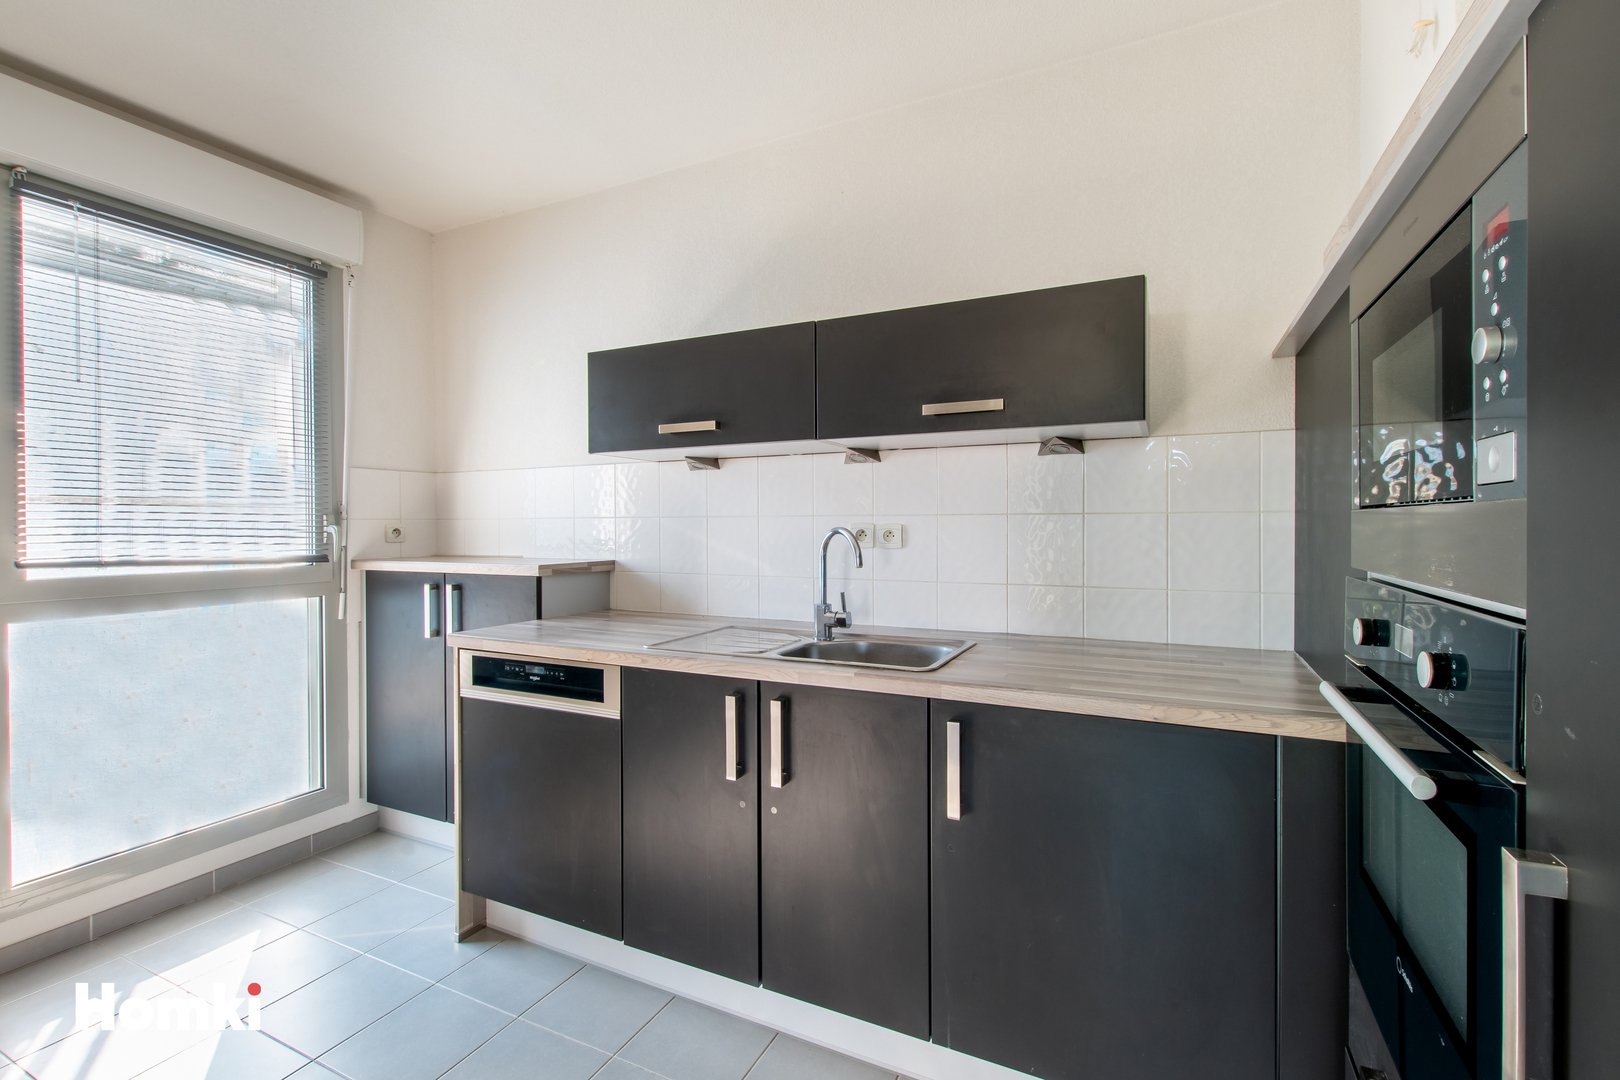 Homki - Vente Appartement  de 83.0 m² à Montpellier 34070